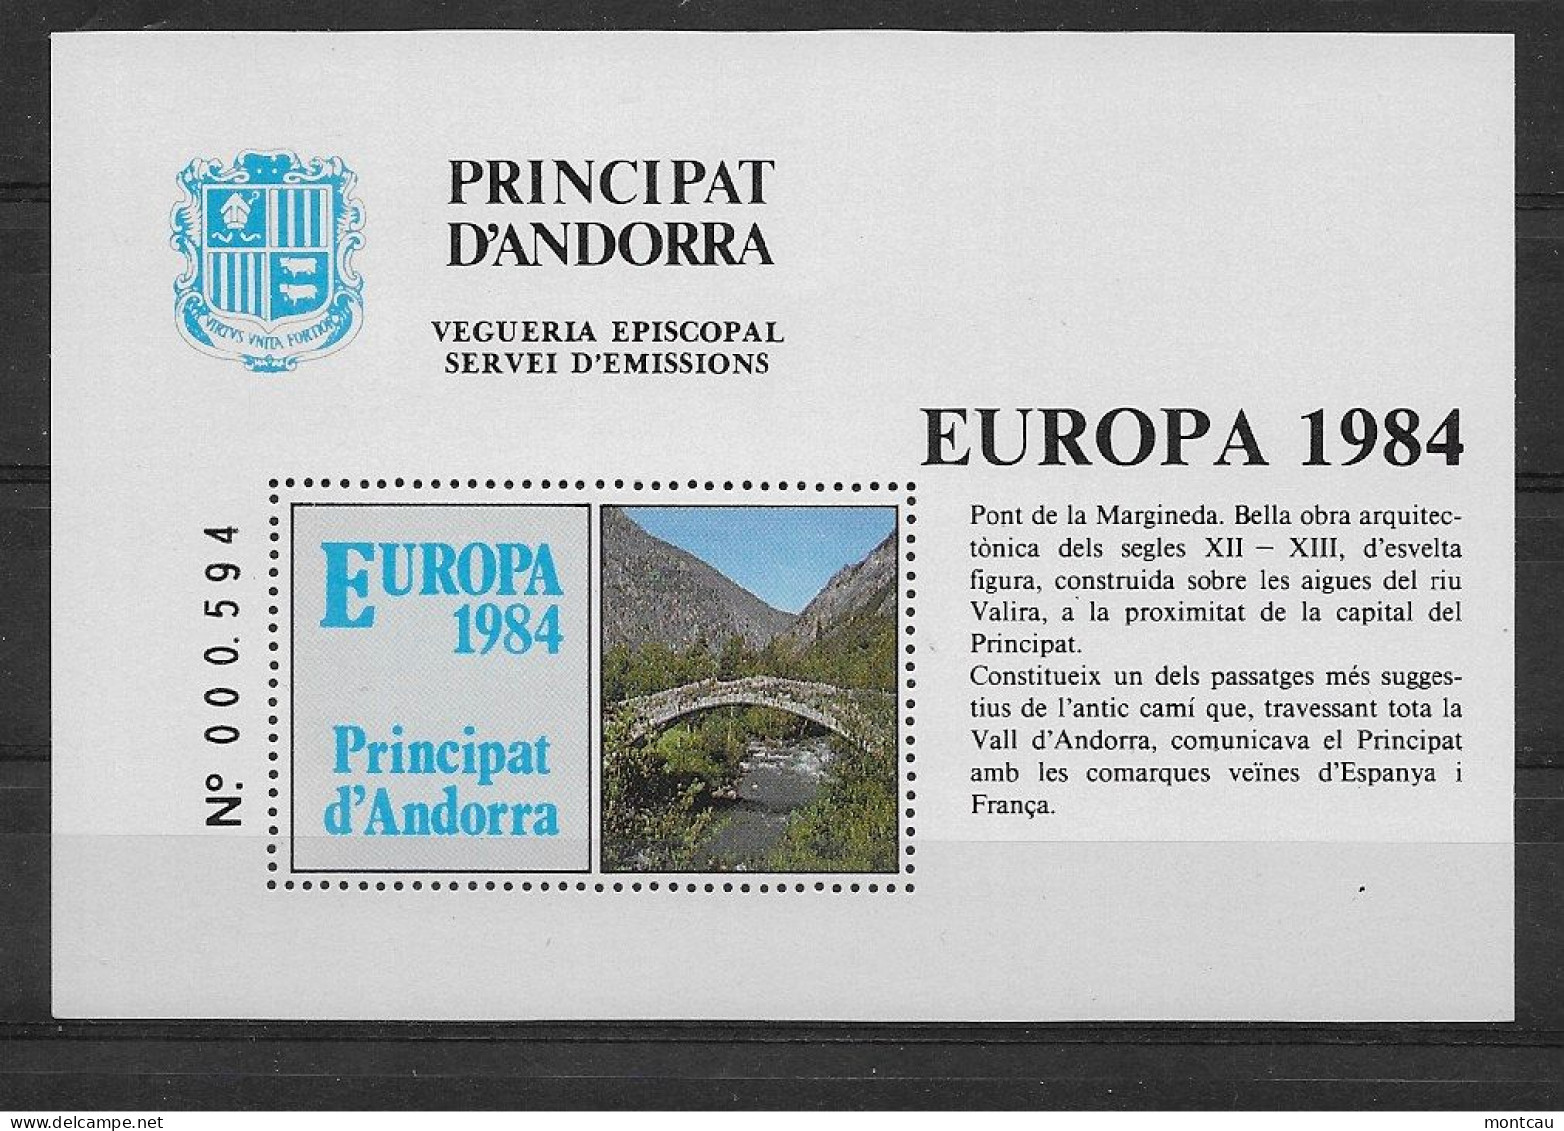 Andorra - 1984 - Vegueria Episcopal Europa - Episcopal Viguerie